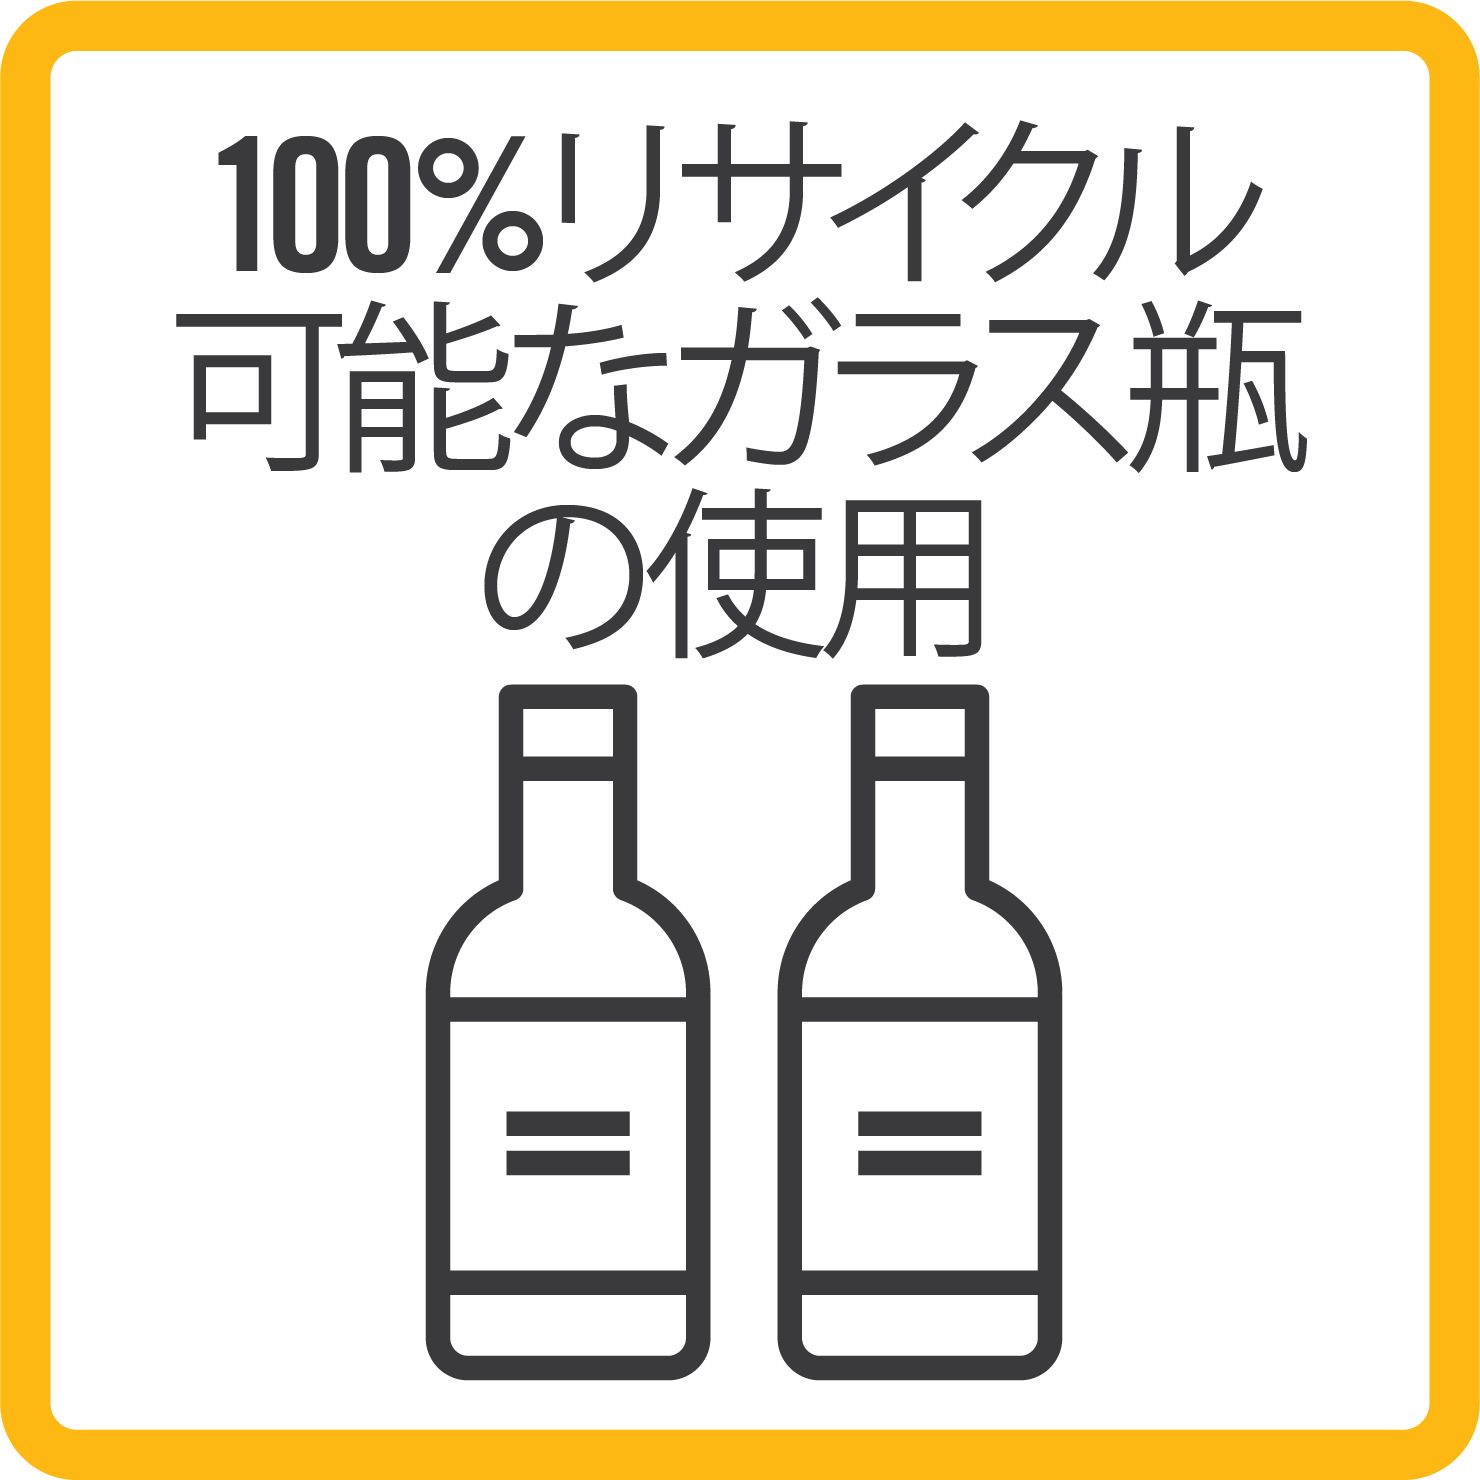 Sustainability glass bottles_BORDER_japanese